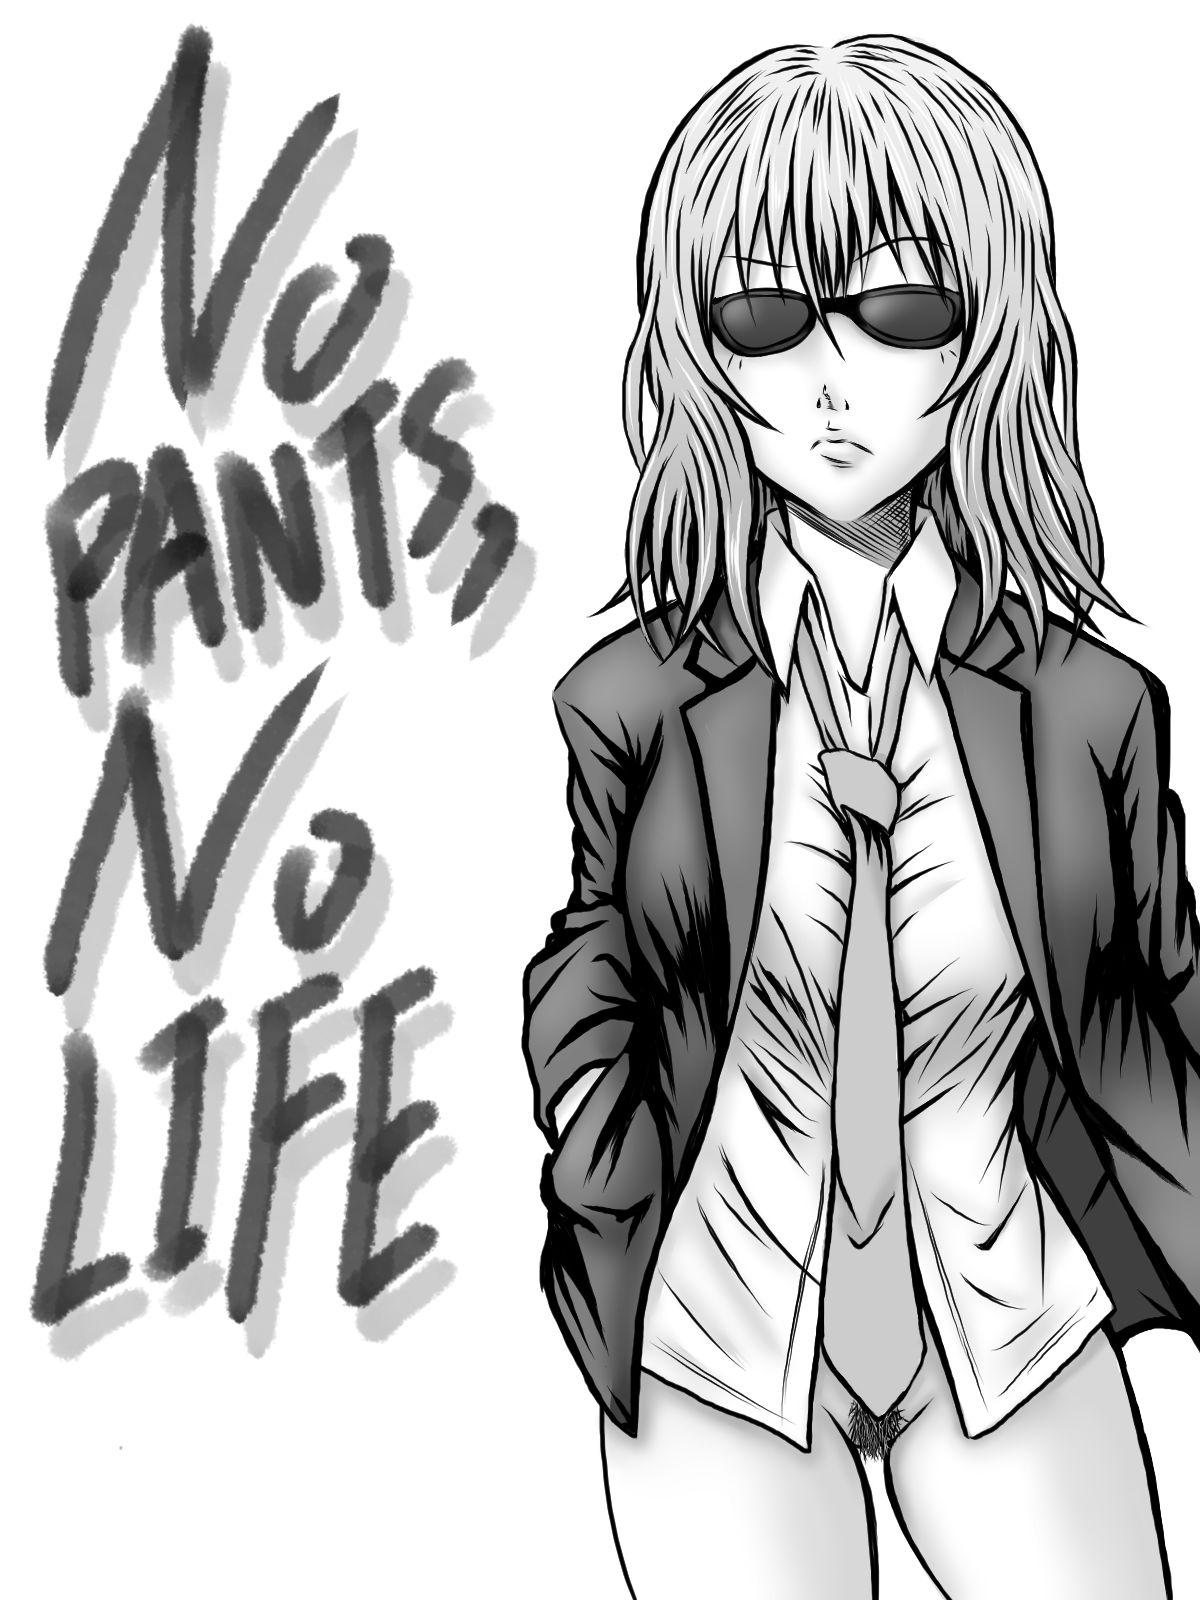 NO PANTS, NO LIFE 0